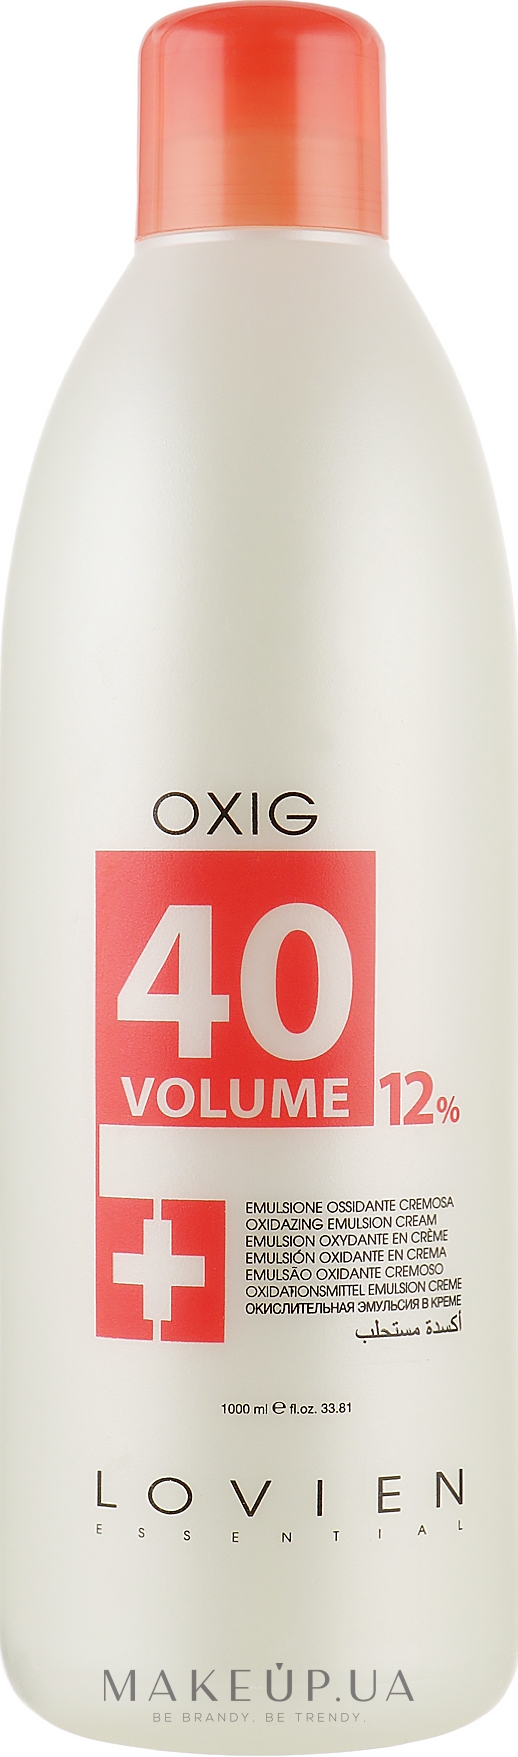 Окислювач 12 % - Lovien Essential Oxydant Emulsion 40 Vol — фото 1000ml